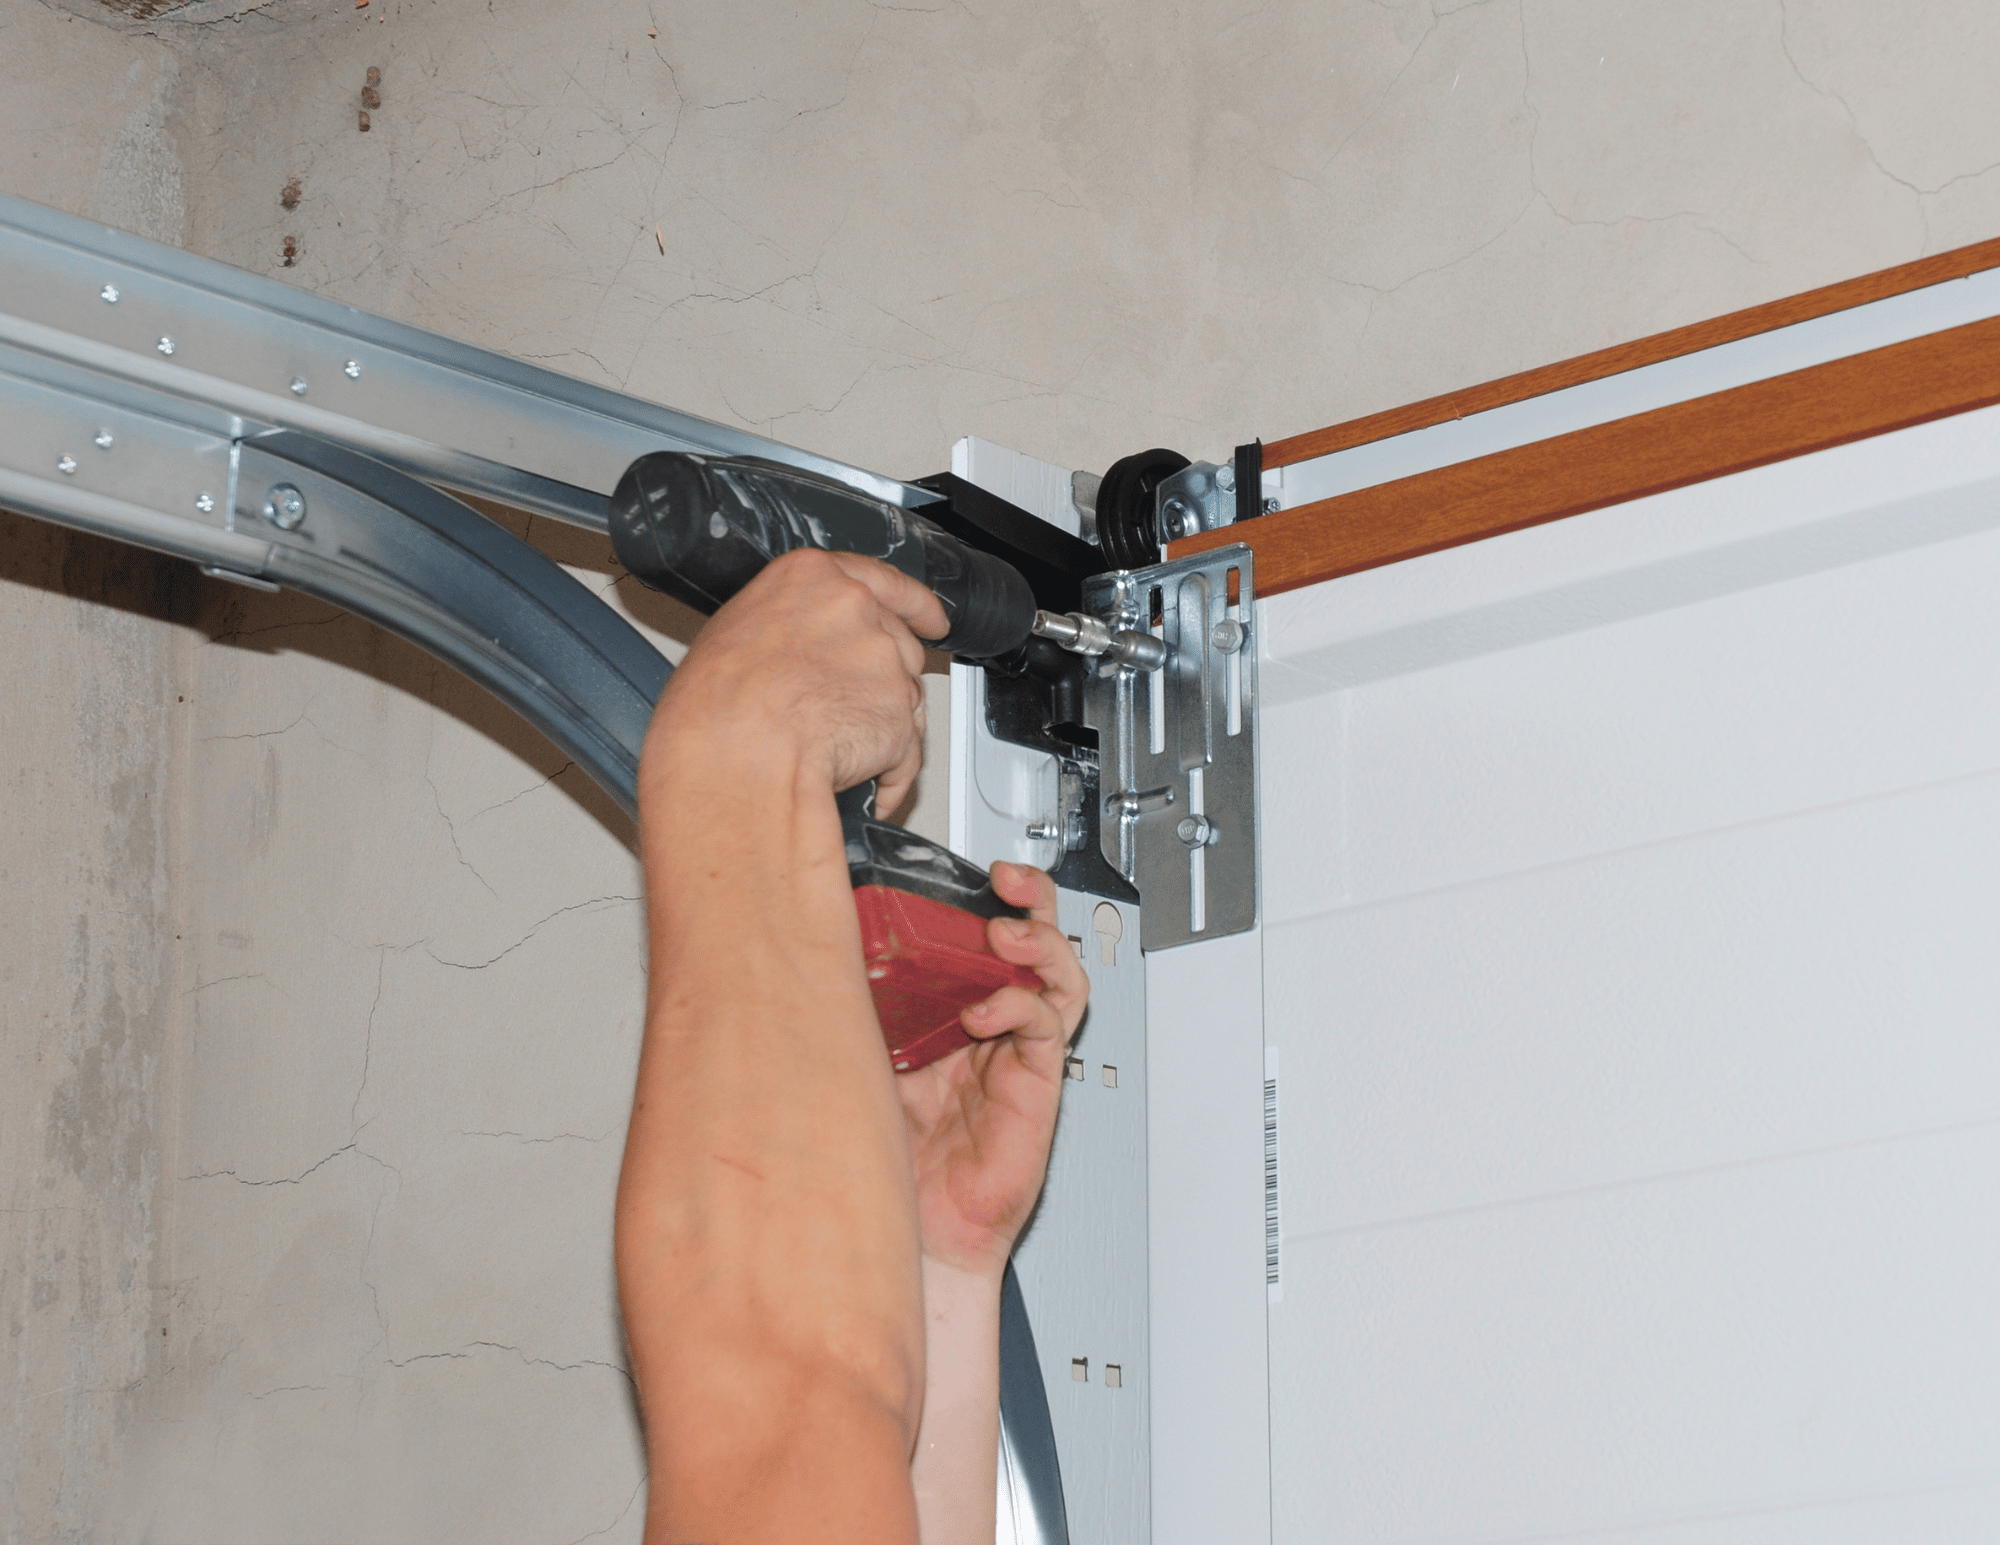 Garage door spring getting fixed. Tips for better garage door maintenance.